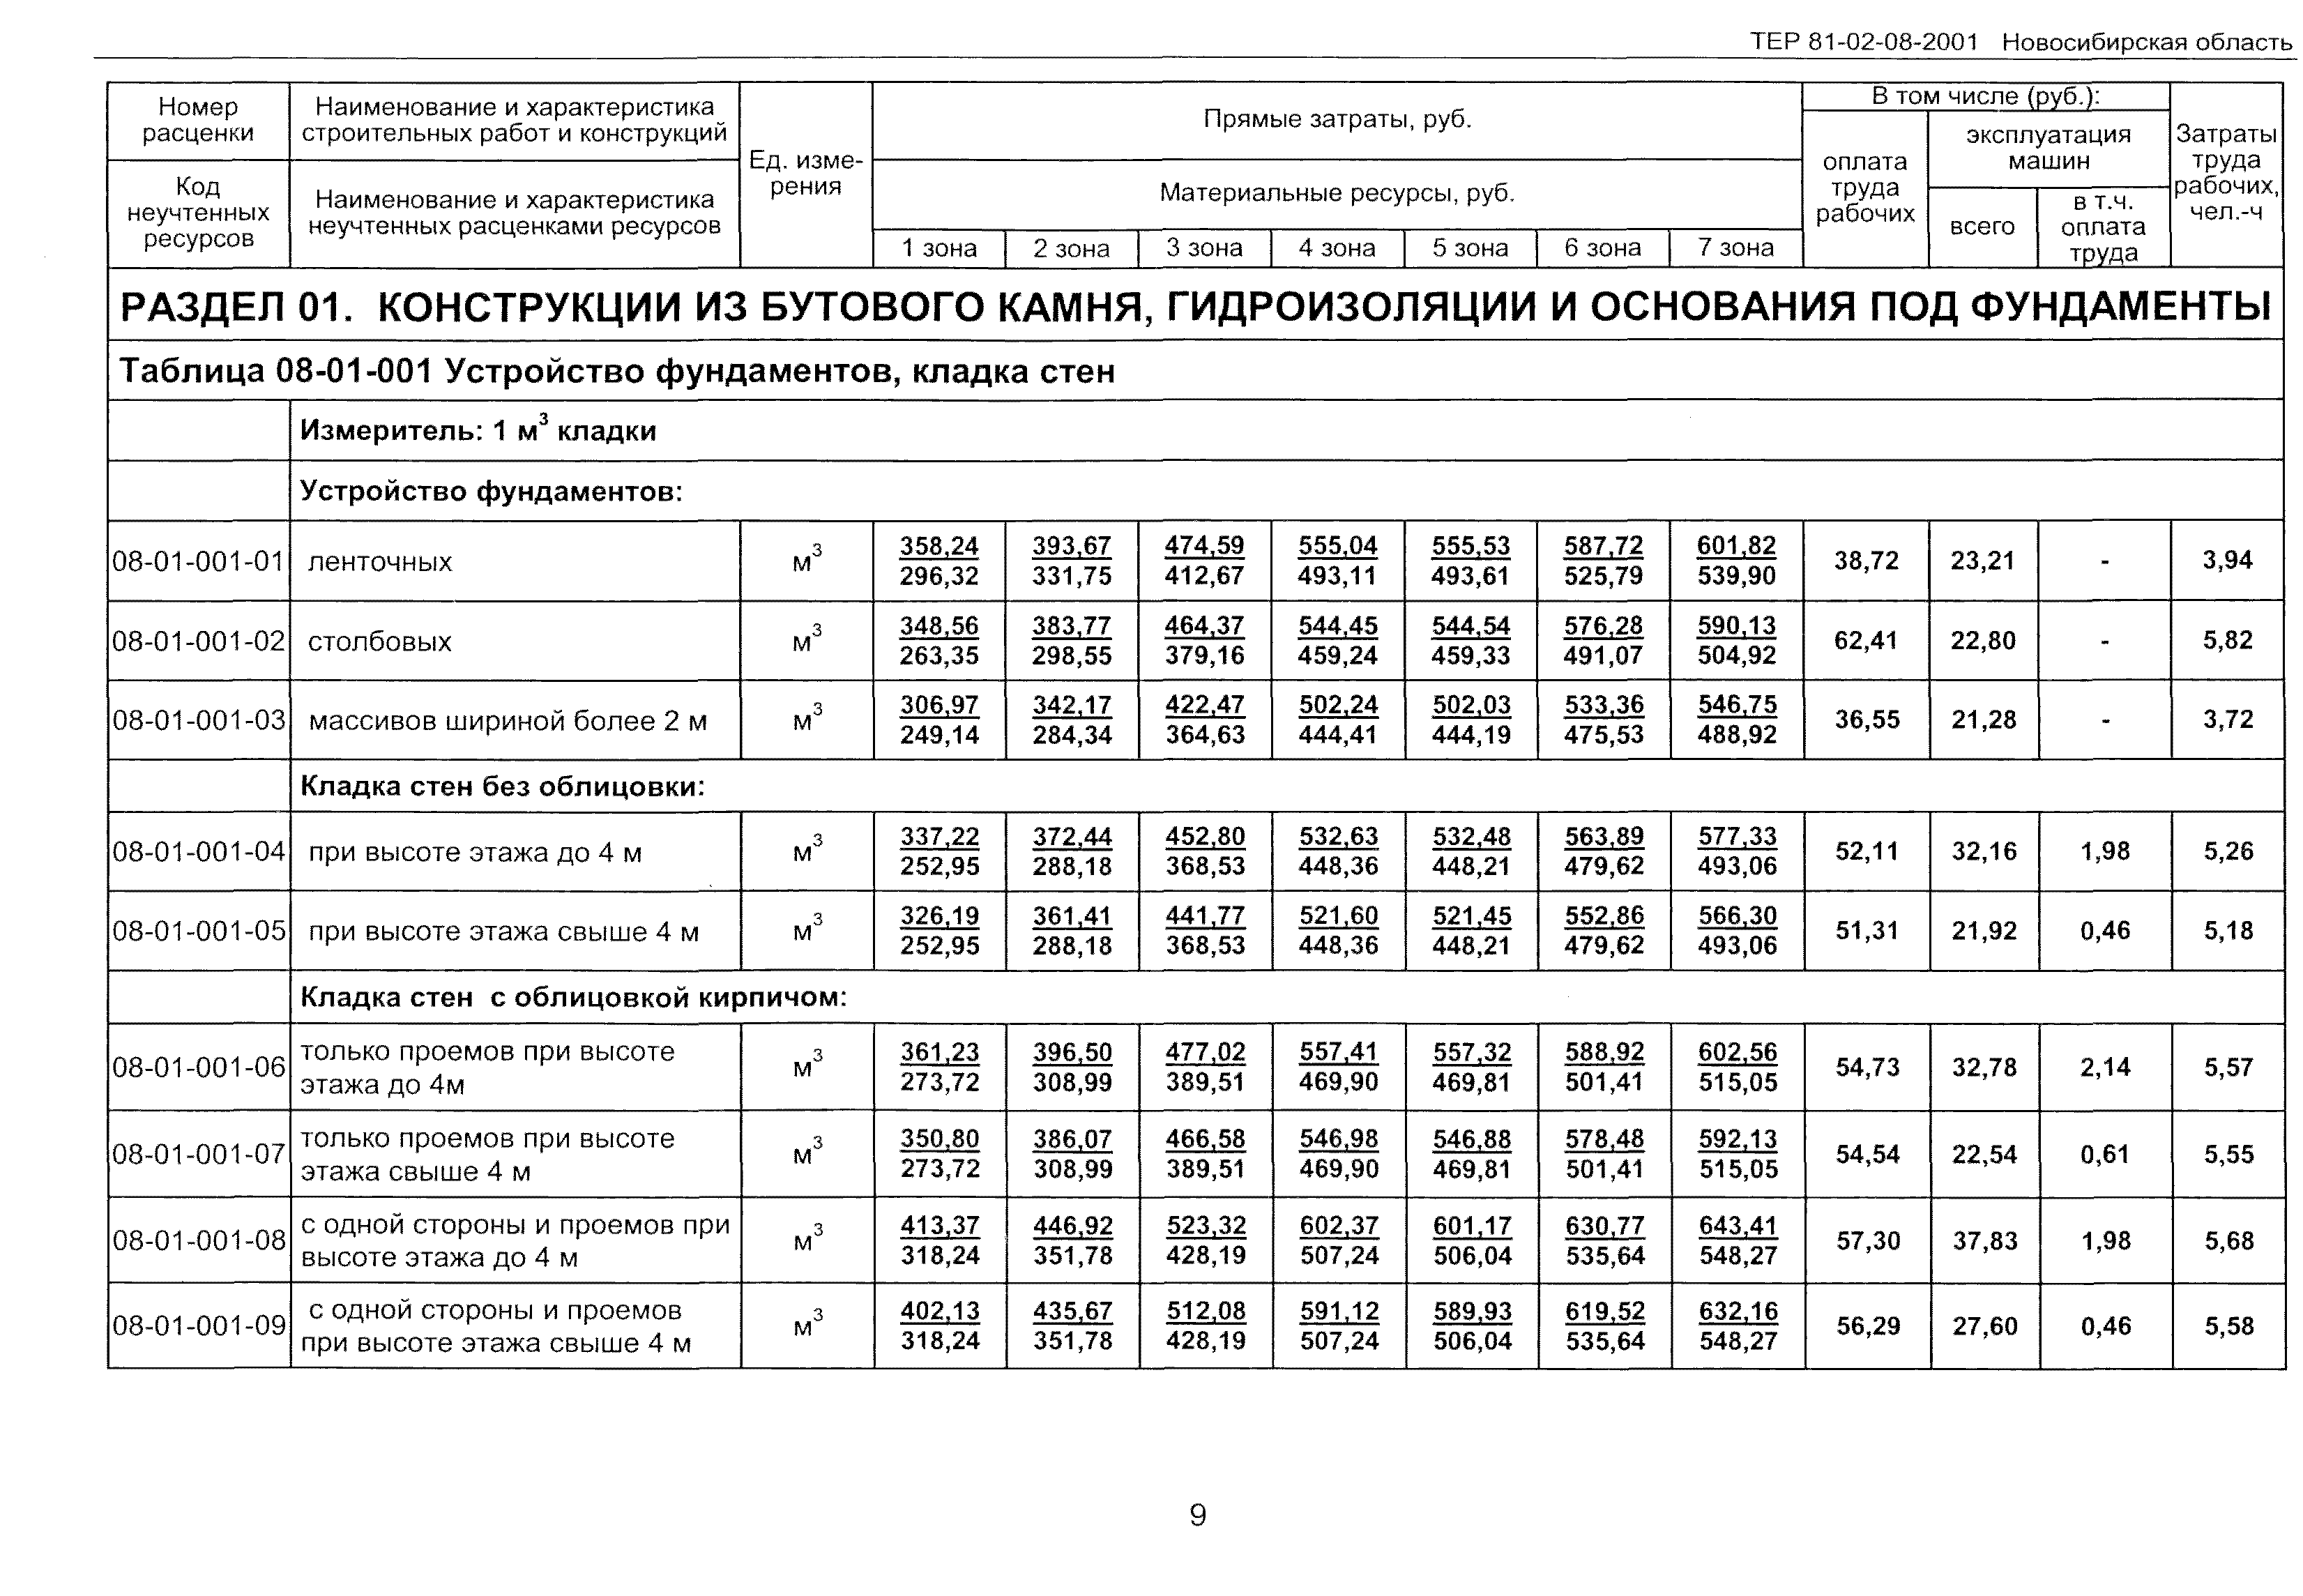 ТЕР 2001-08 Новосибирской области